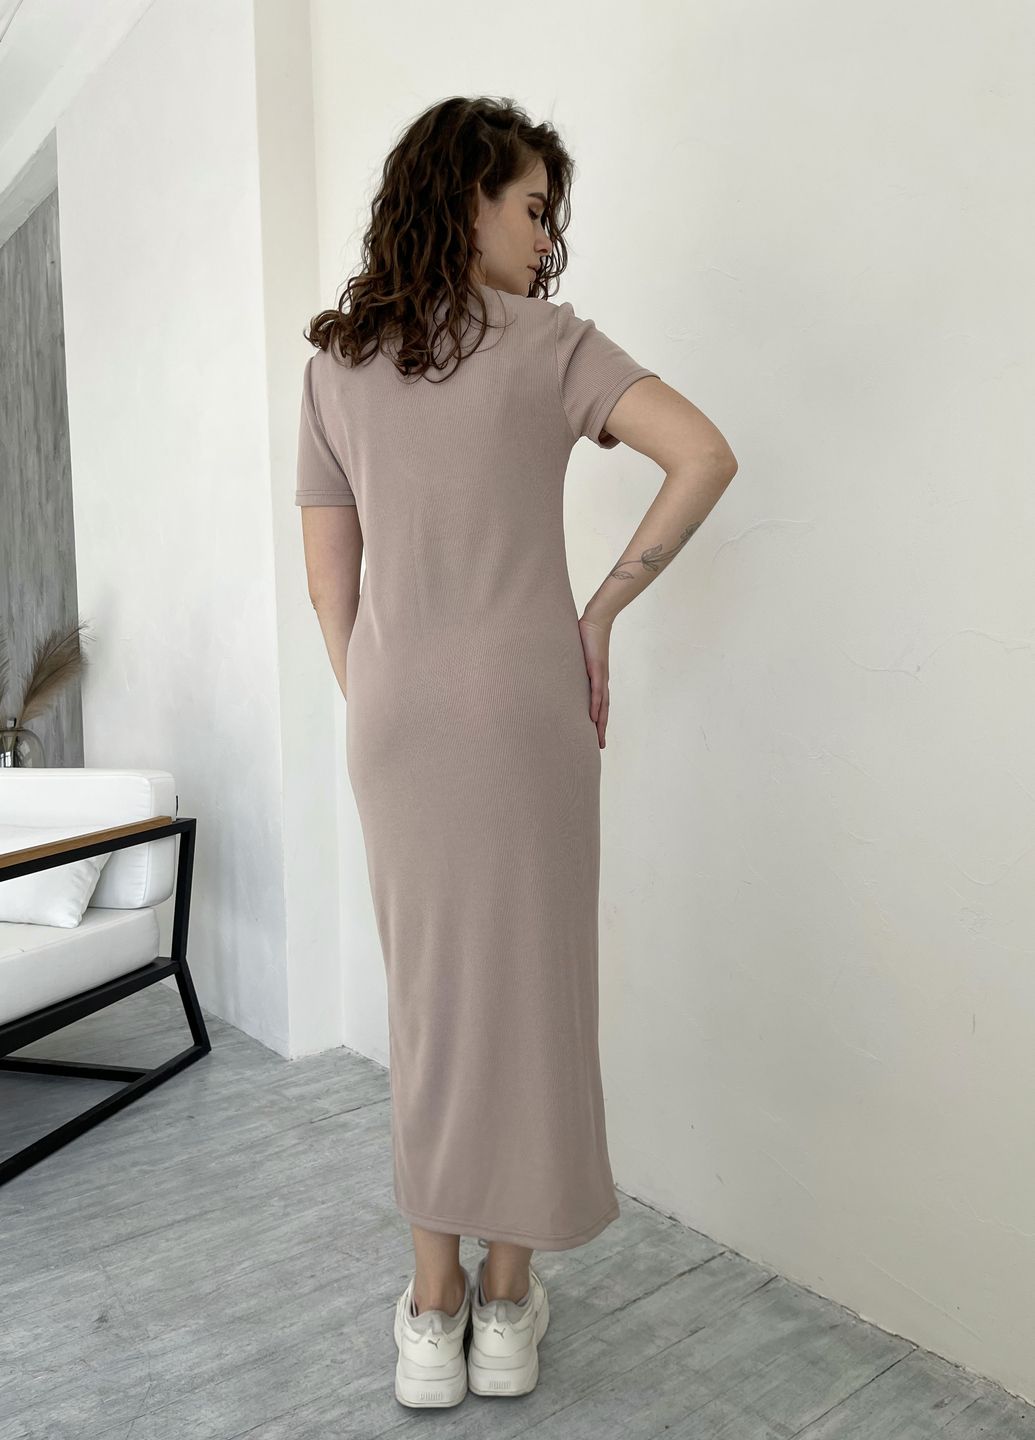 Купить Длинное платье-футболка в рубчик бежевое Merlini Кассо 700000123 размер 42-44 (S-M) в интернет-магазине